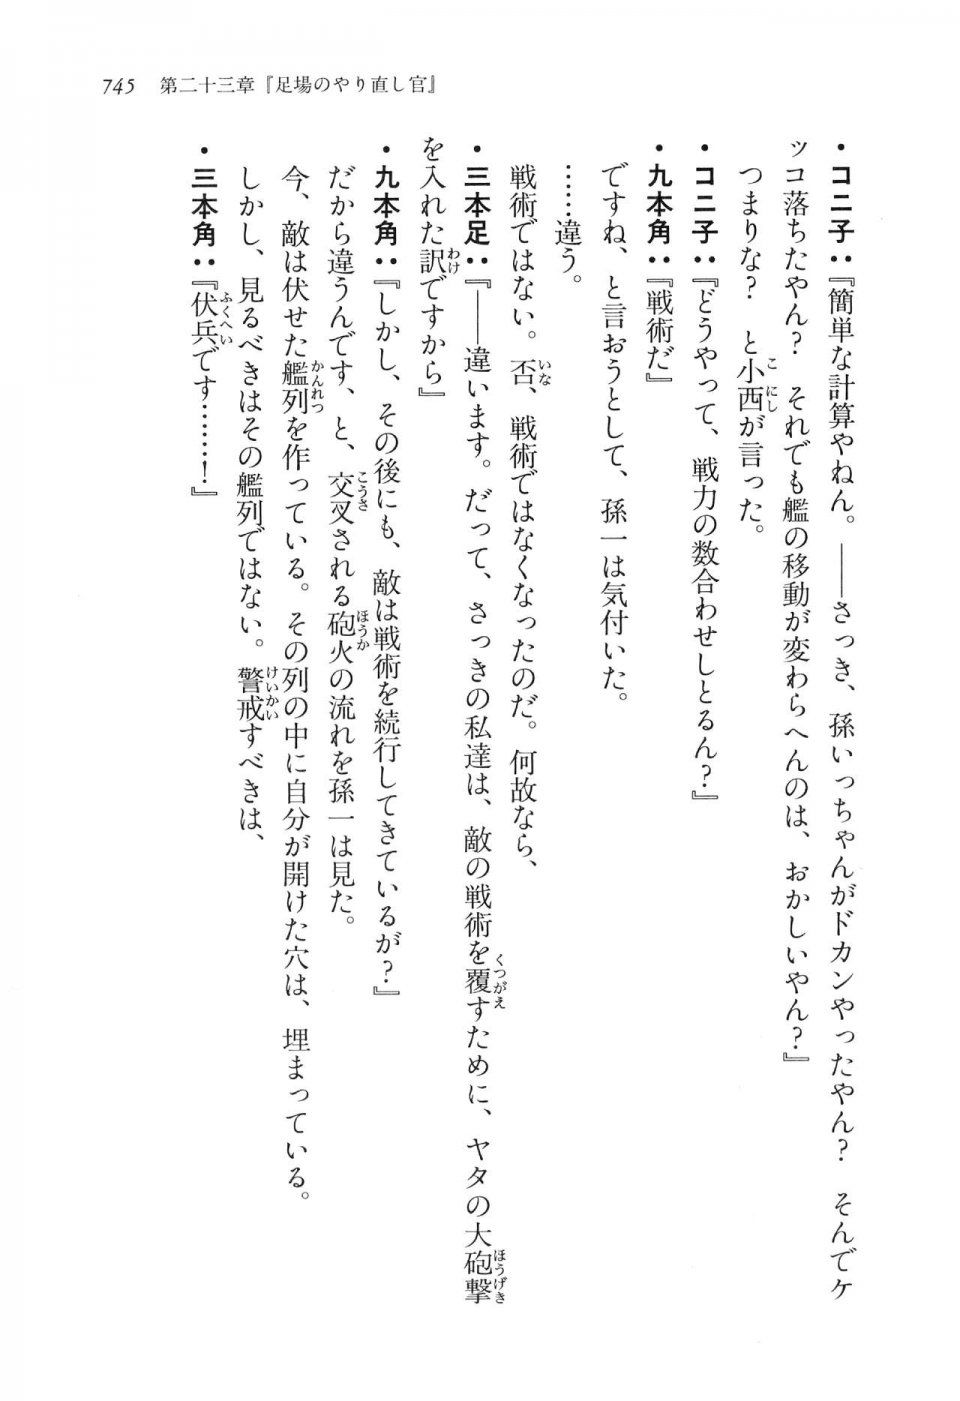 Kyoukai Senjou no Horizon LN Vol 16(7A) - Photo #745